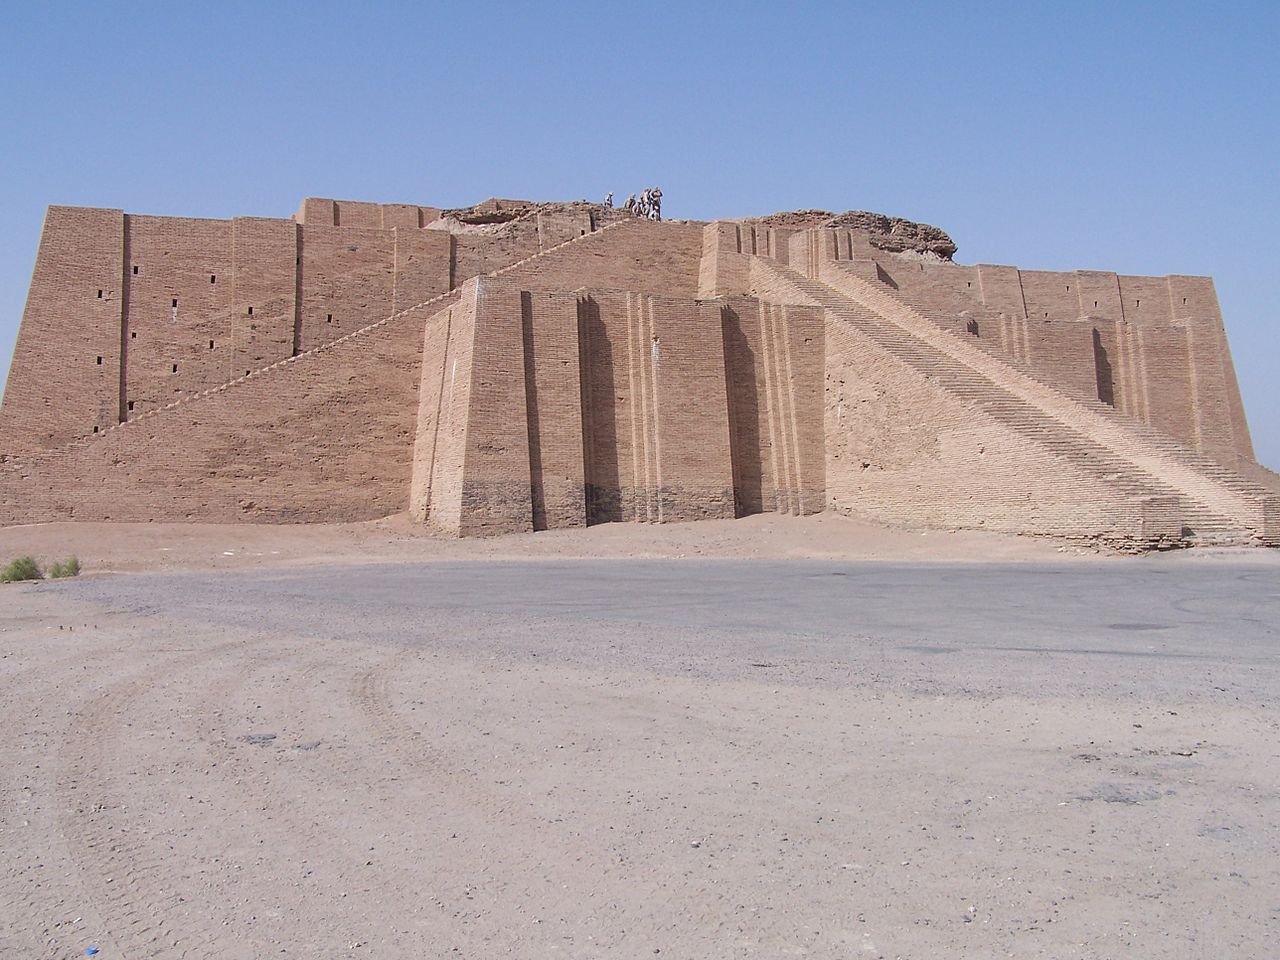 Fachada reconstruída do Zigurate: estrutura babilônica muito comum na época